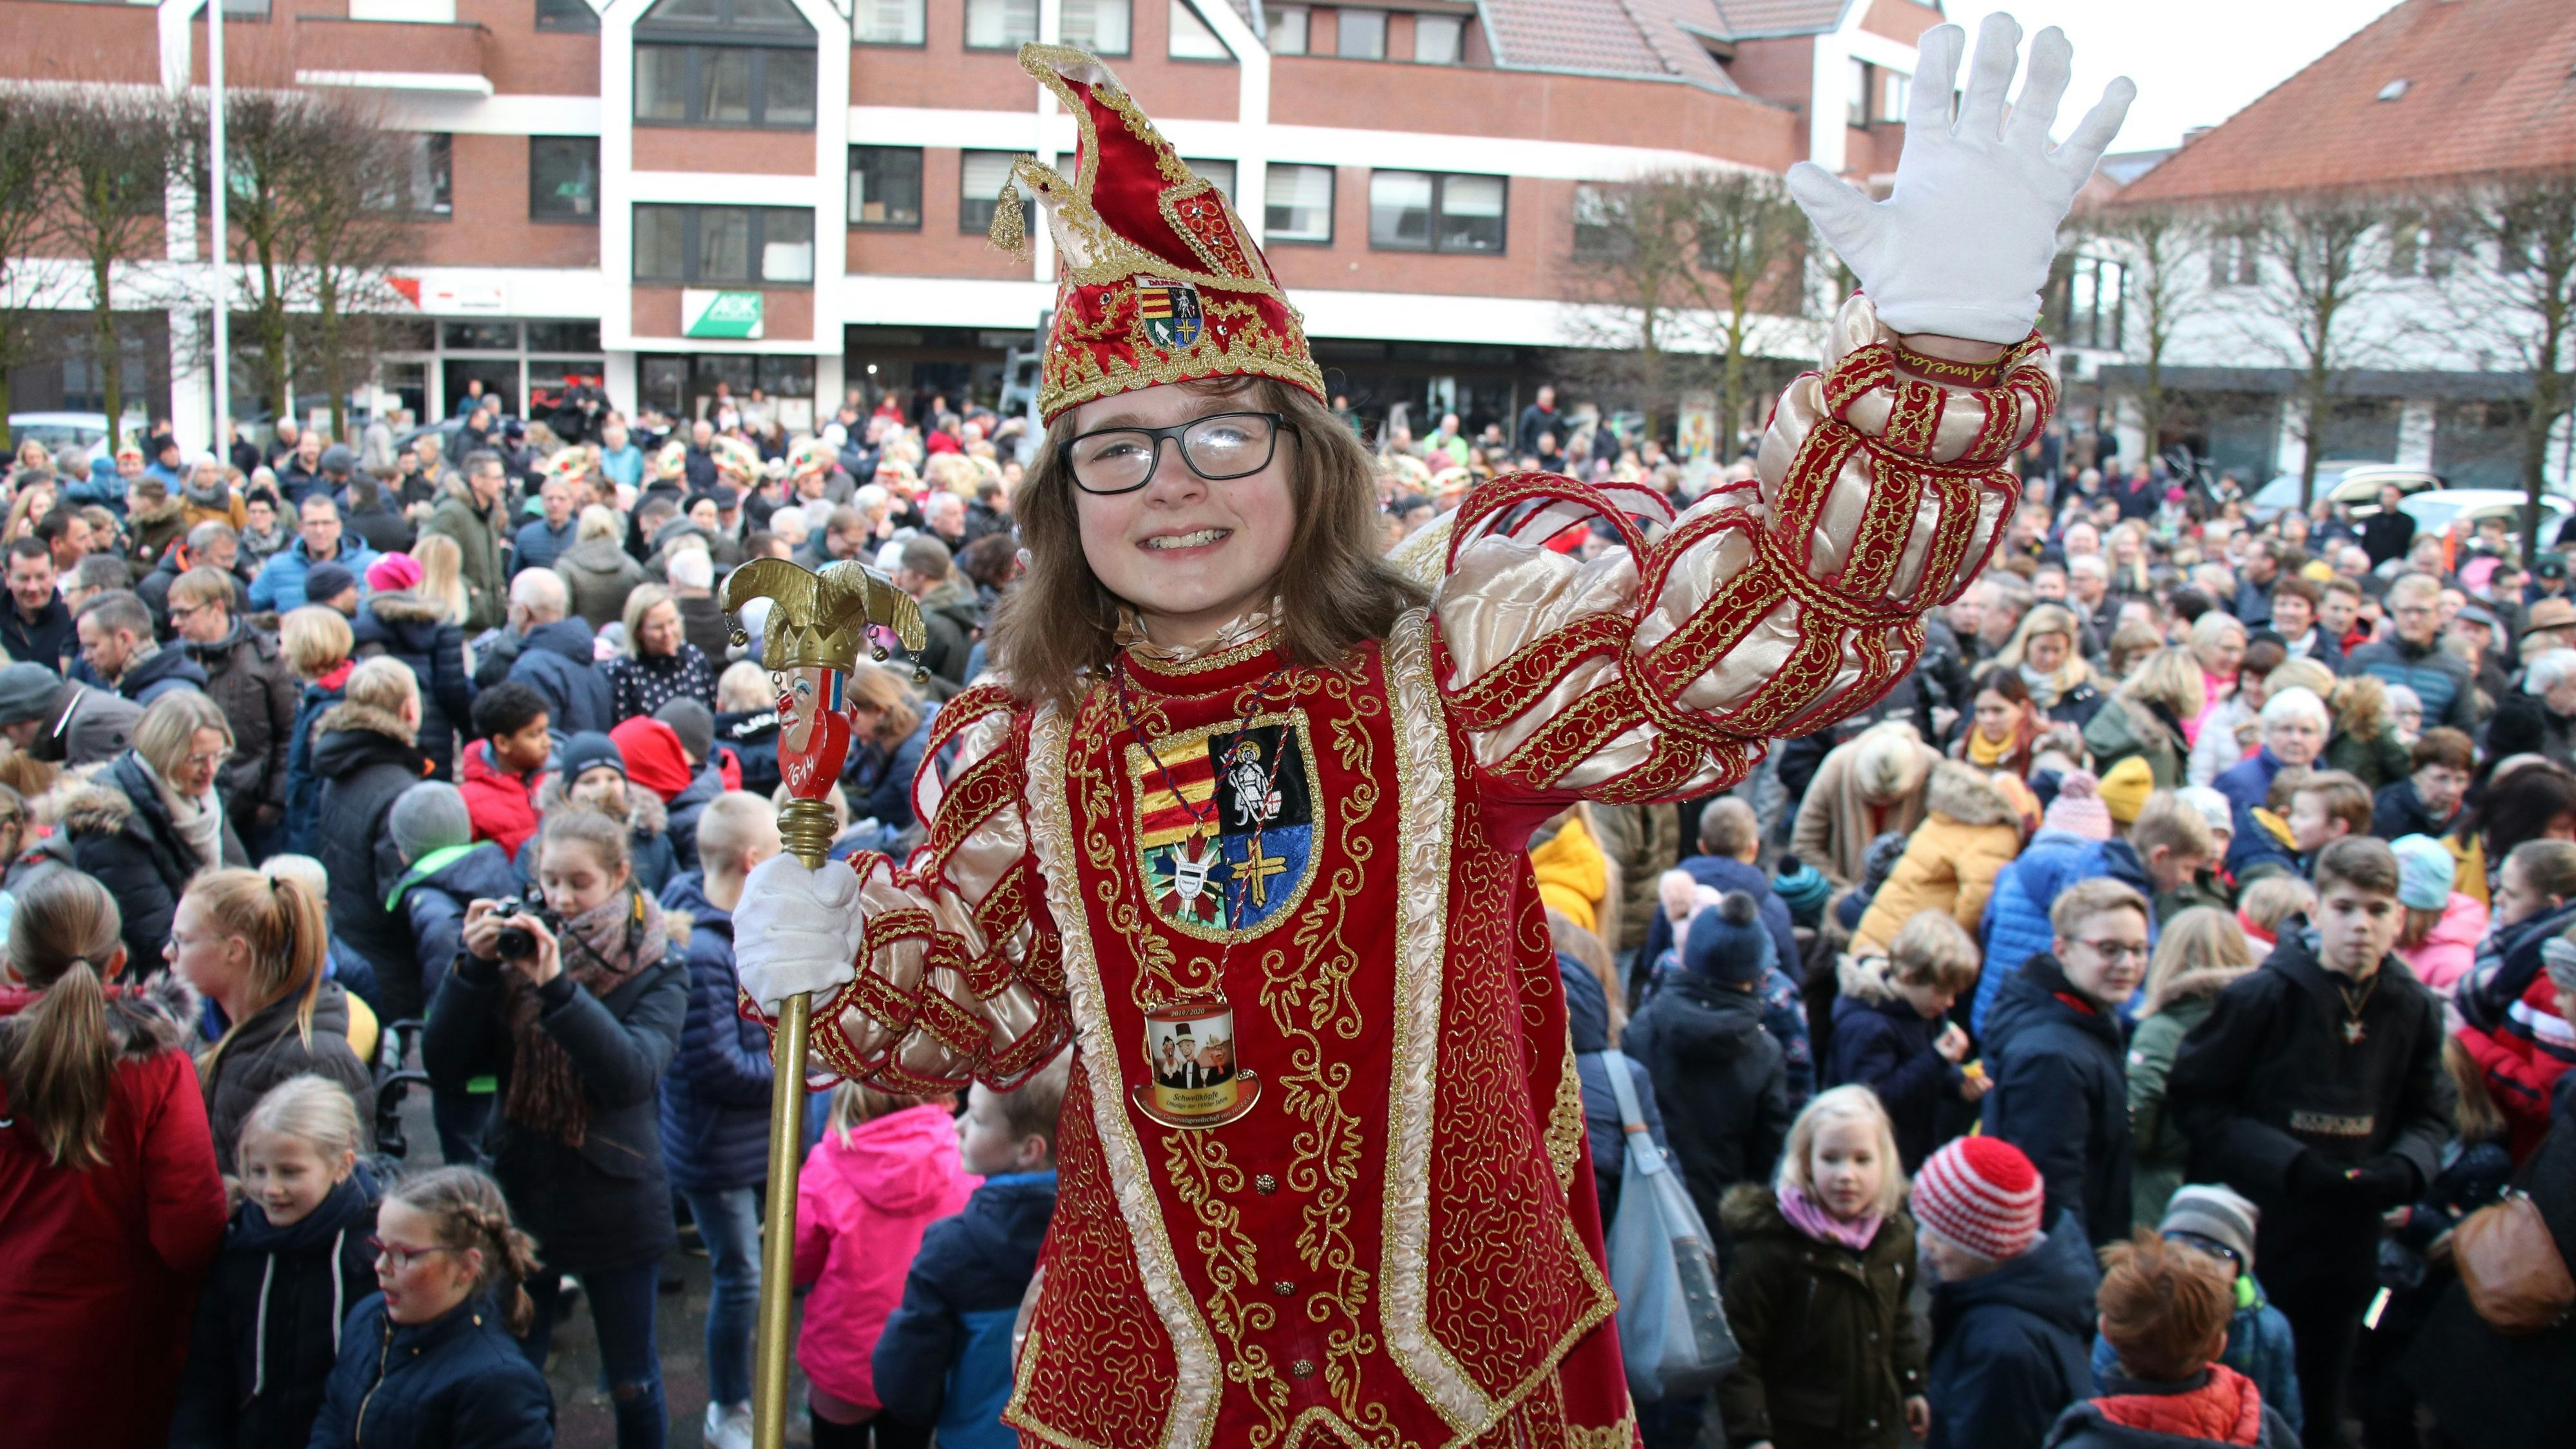 Um seinen Nachfolger geht es: Die Carnevalsgeselslchaft stellt am Sonntag die Tollität vor, die auf Moritz I. (Hackstette) folgt und die Kinder regiert. Foto: Lammert